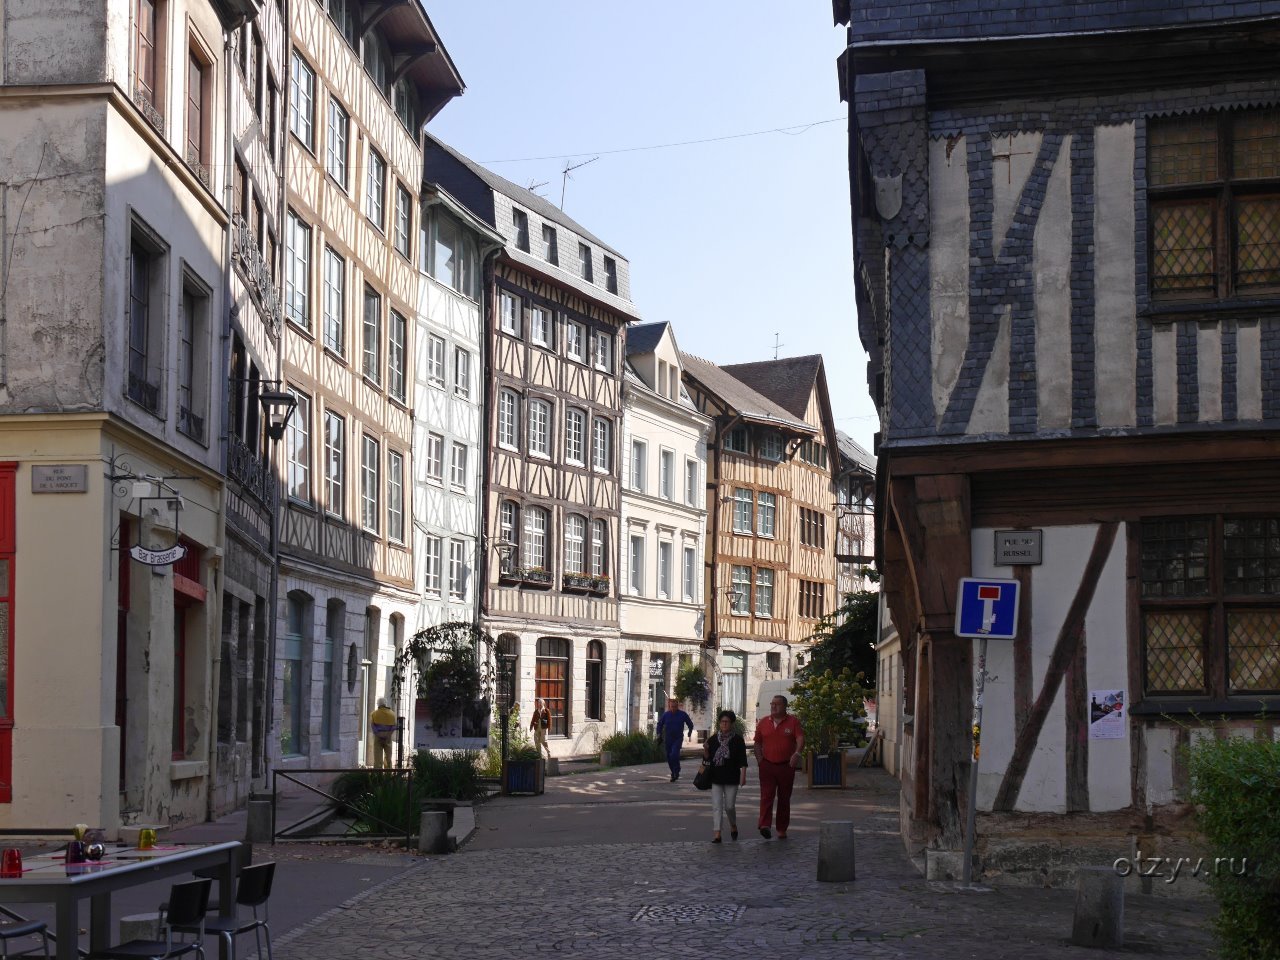 Руан агентство новостей главная. Нормандия Франция Руан. Руан - столица Нормандии. Город Rouen Франция. Руан старый город.